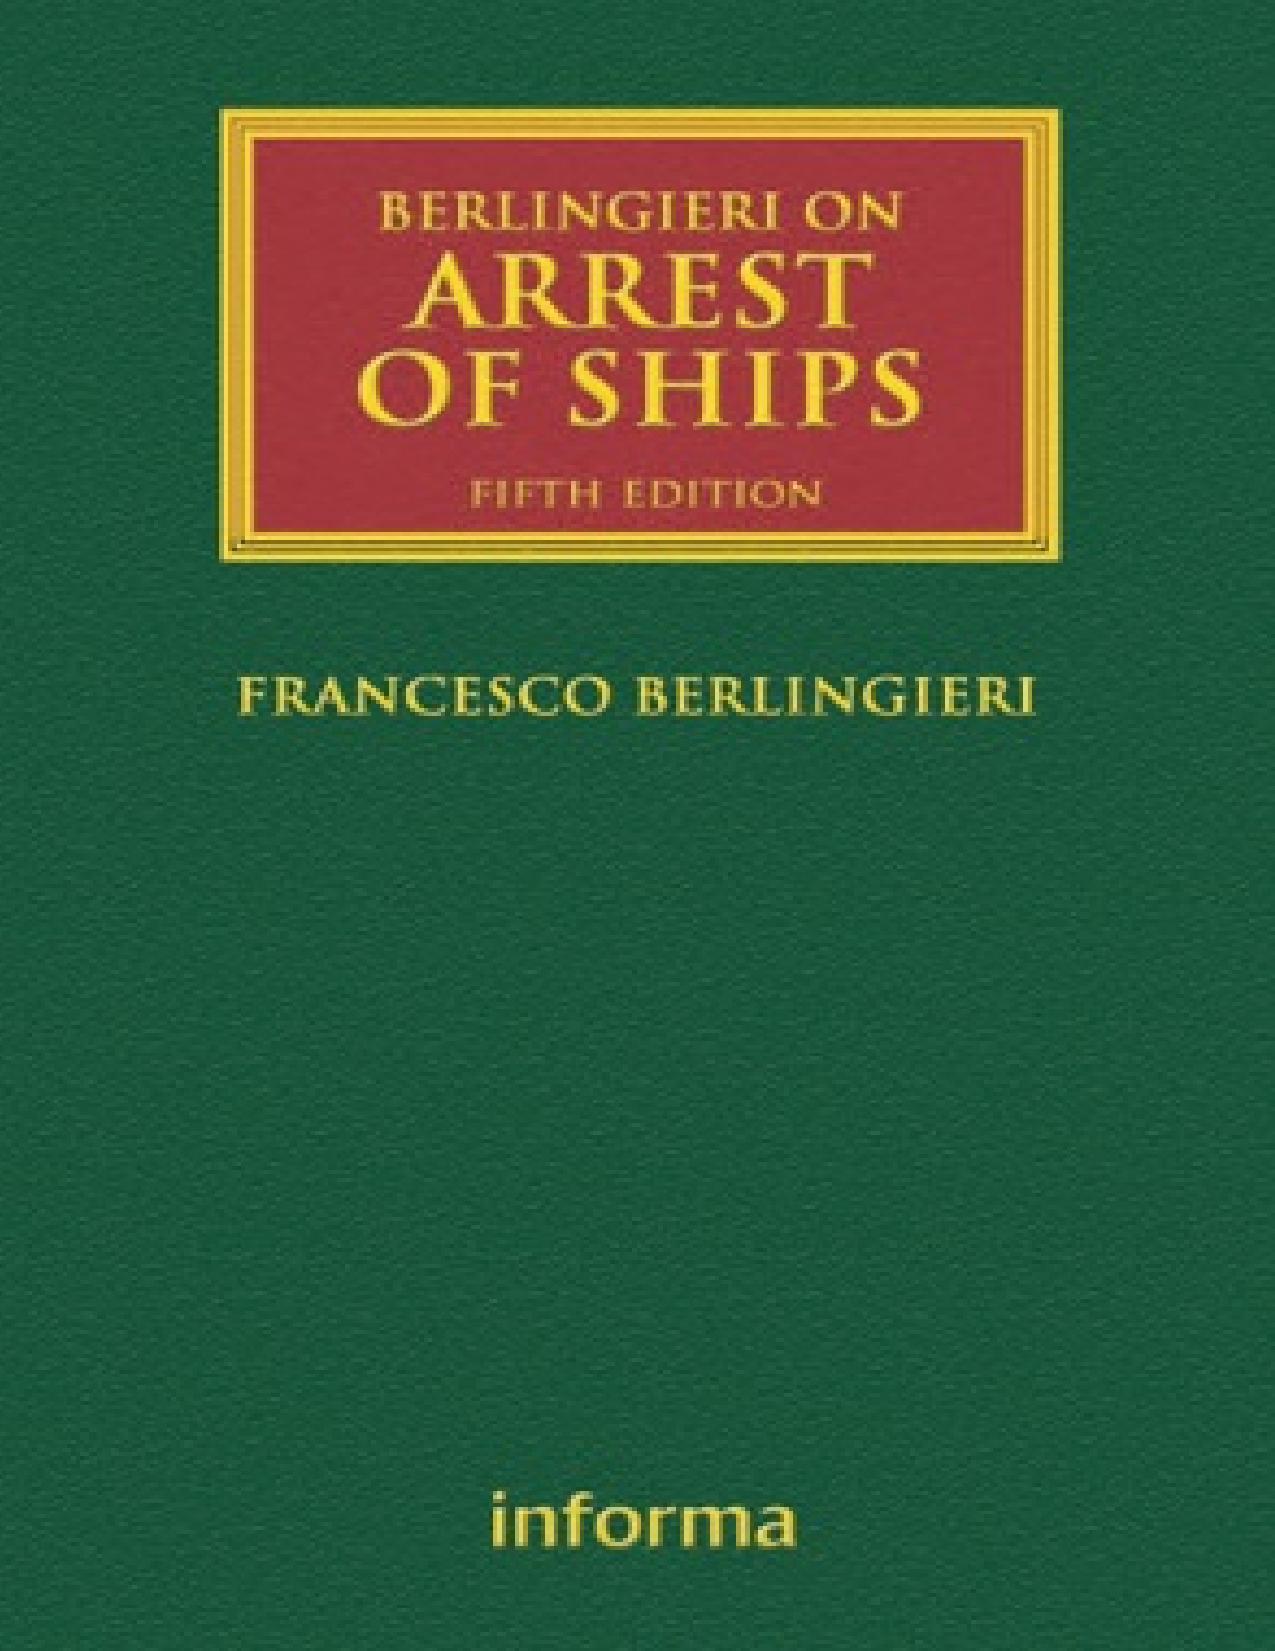 Berlingieri on Arrest of Ships by Francesco Berlingieri